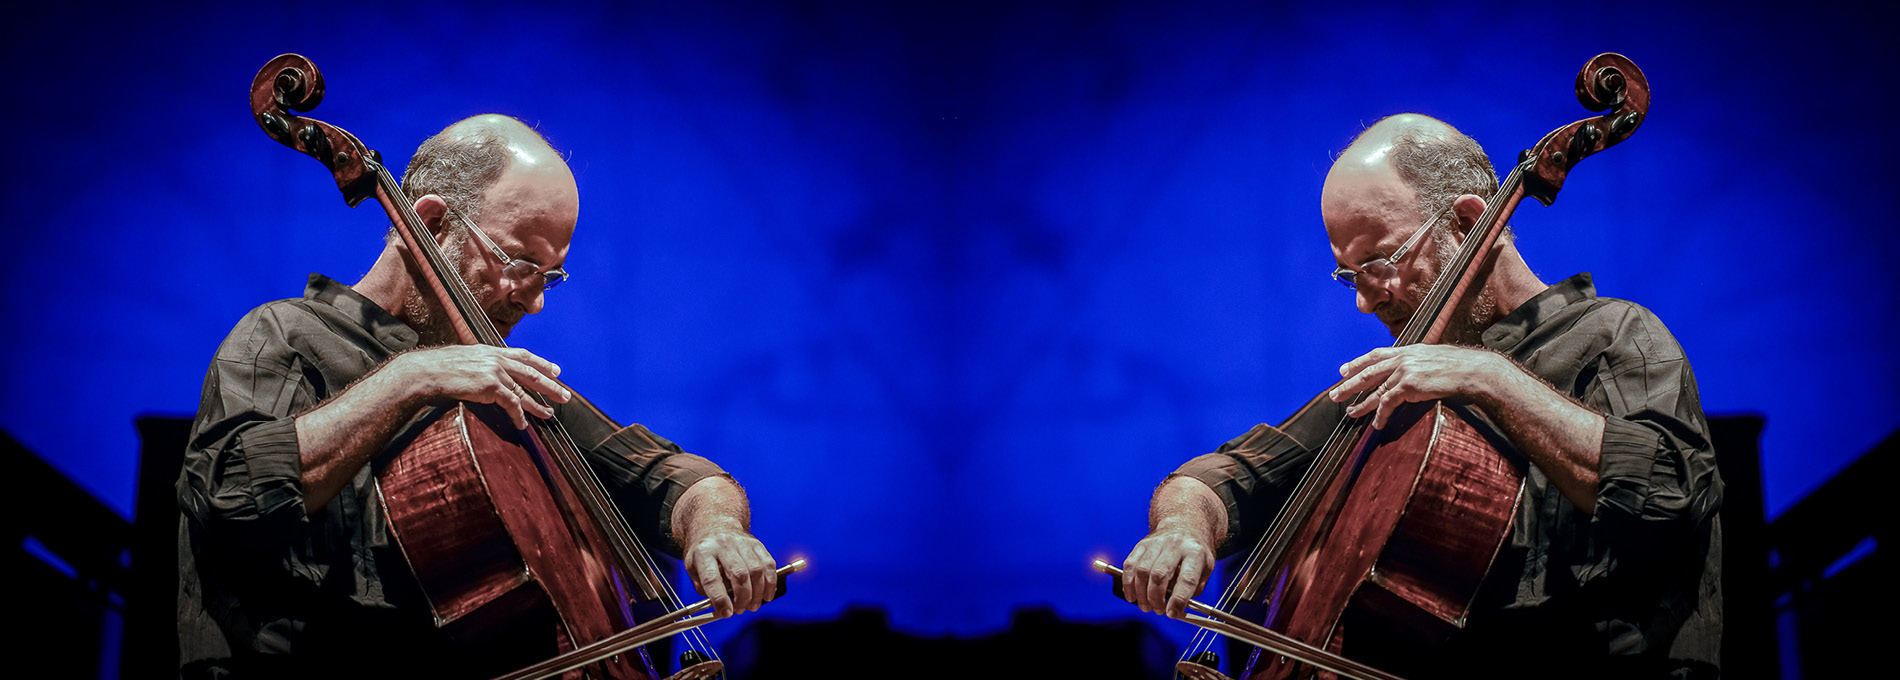 Jaques Morelenbaum tocando violão cello em um palco iluminado e com um fundo azul